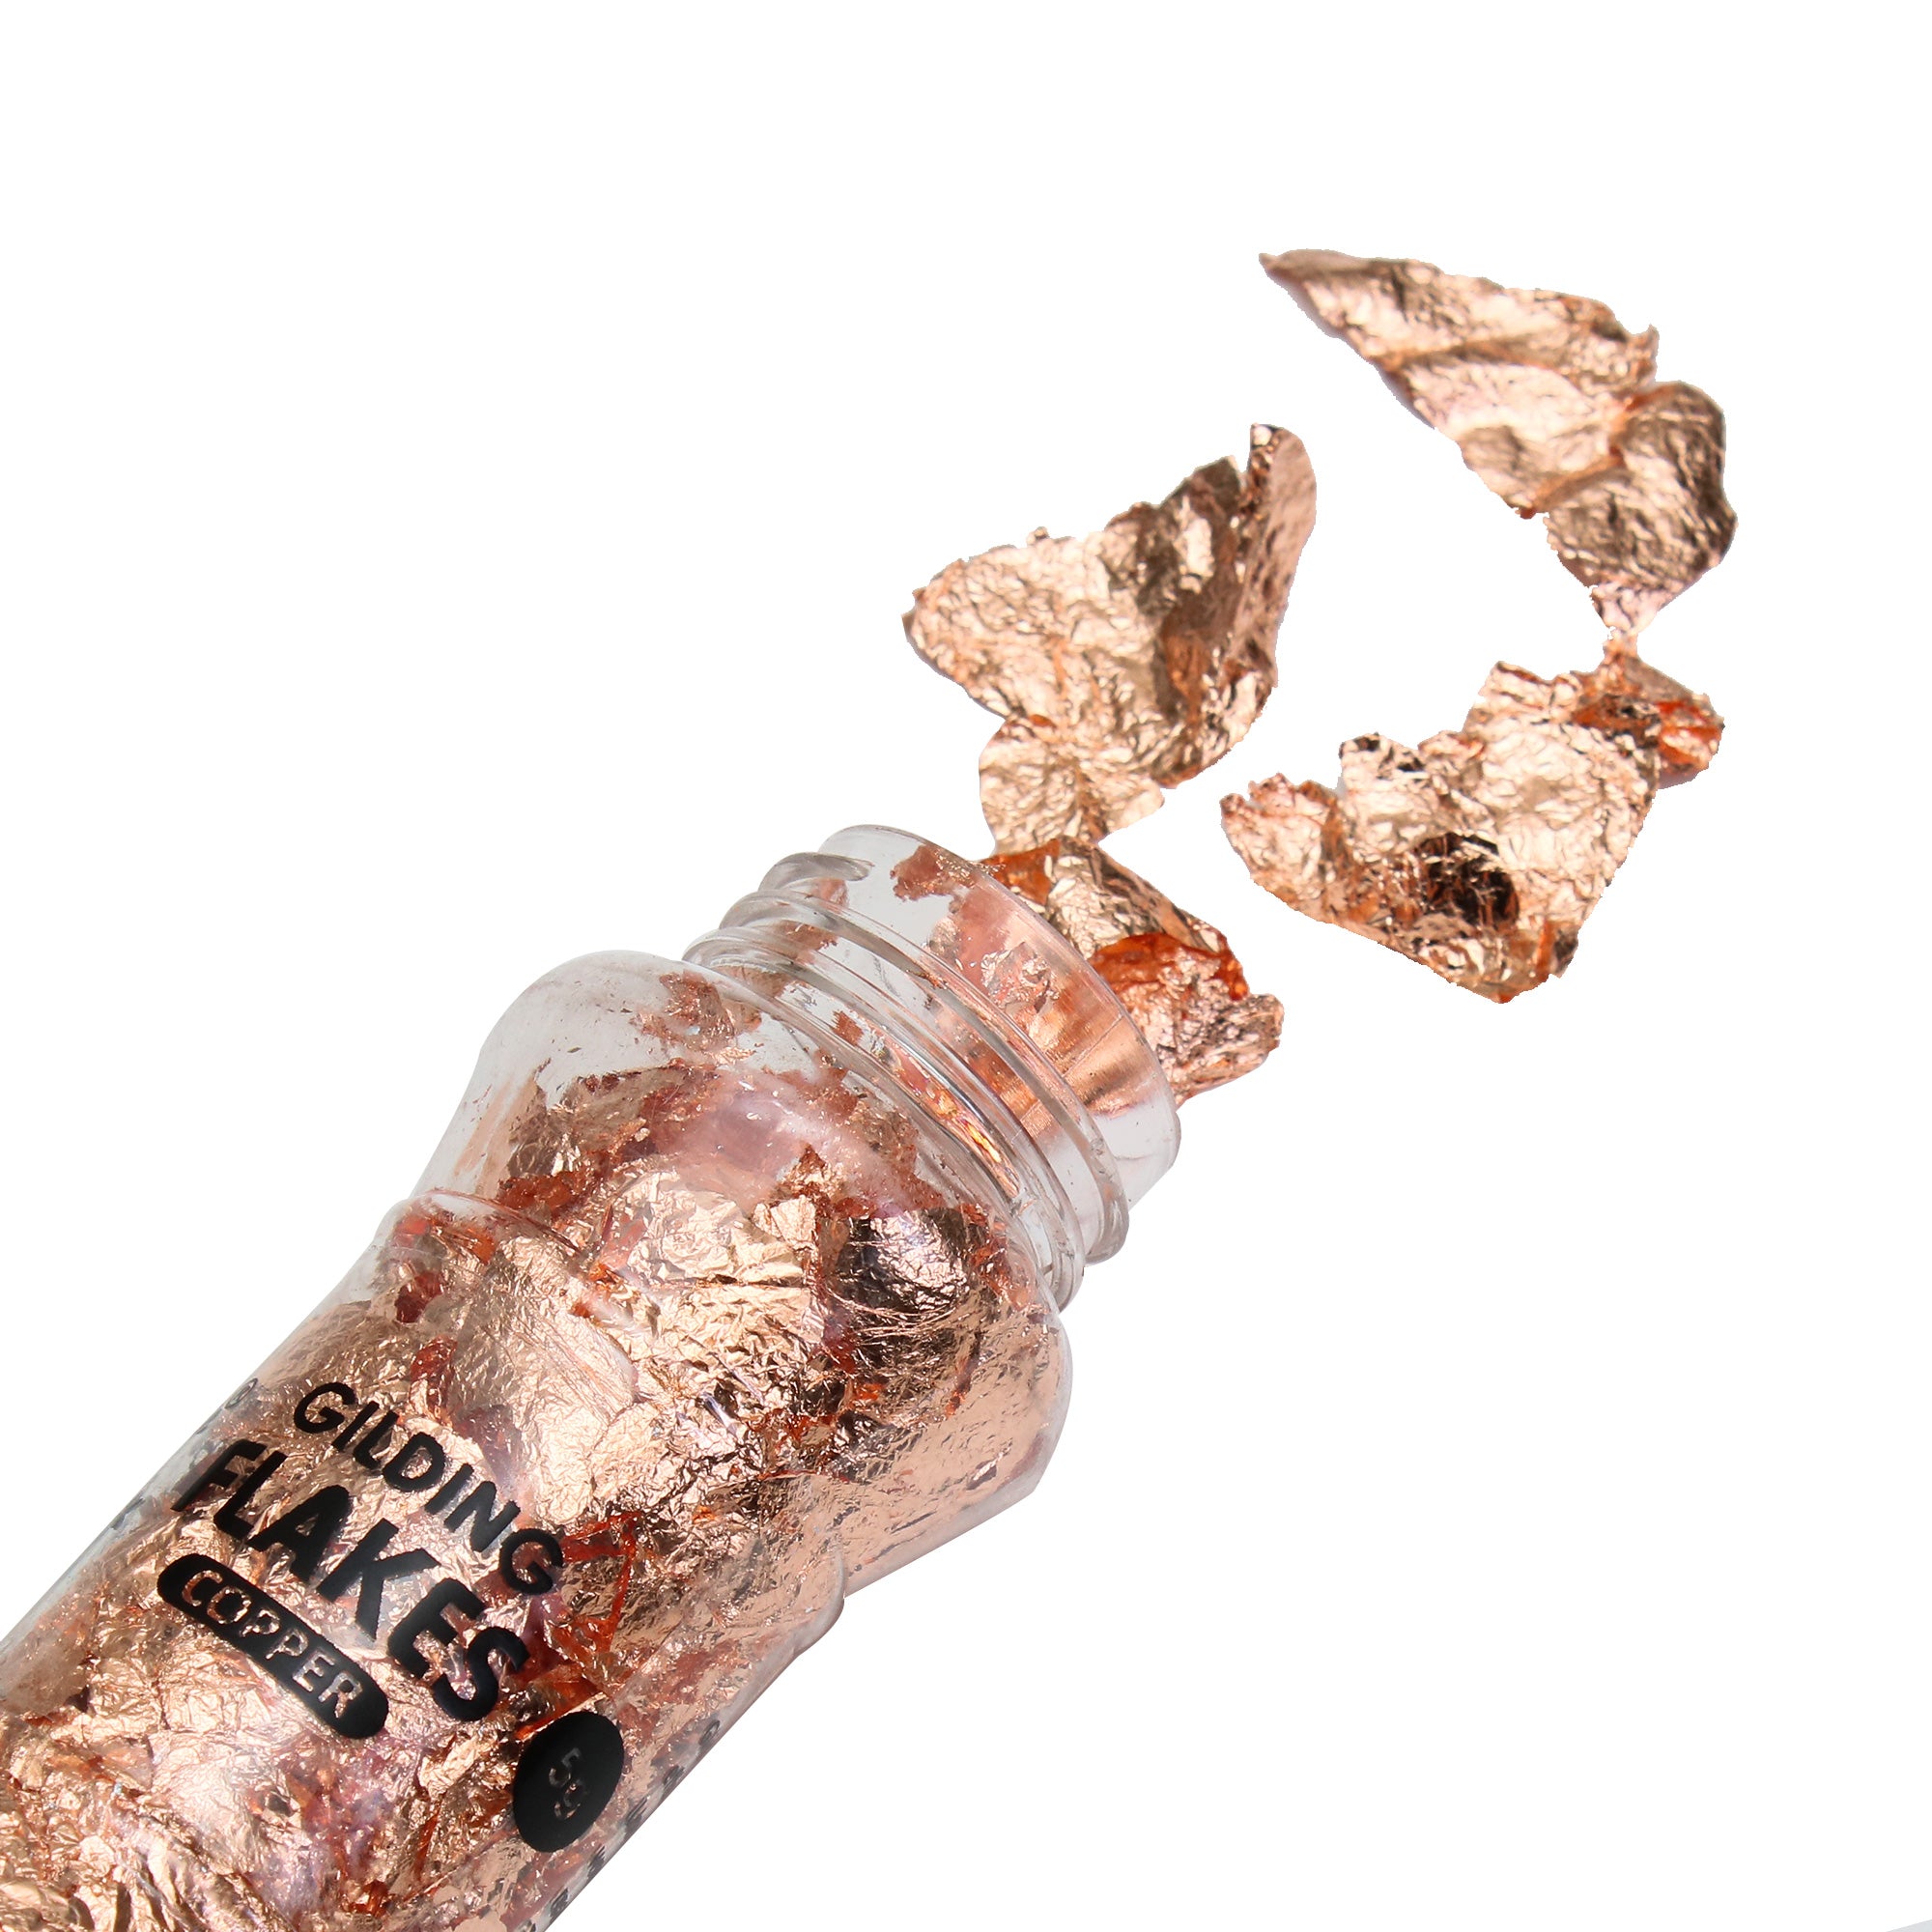 Gilding Flakes Copper 5Gm Bottle Lb